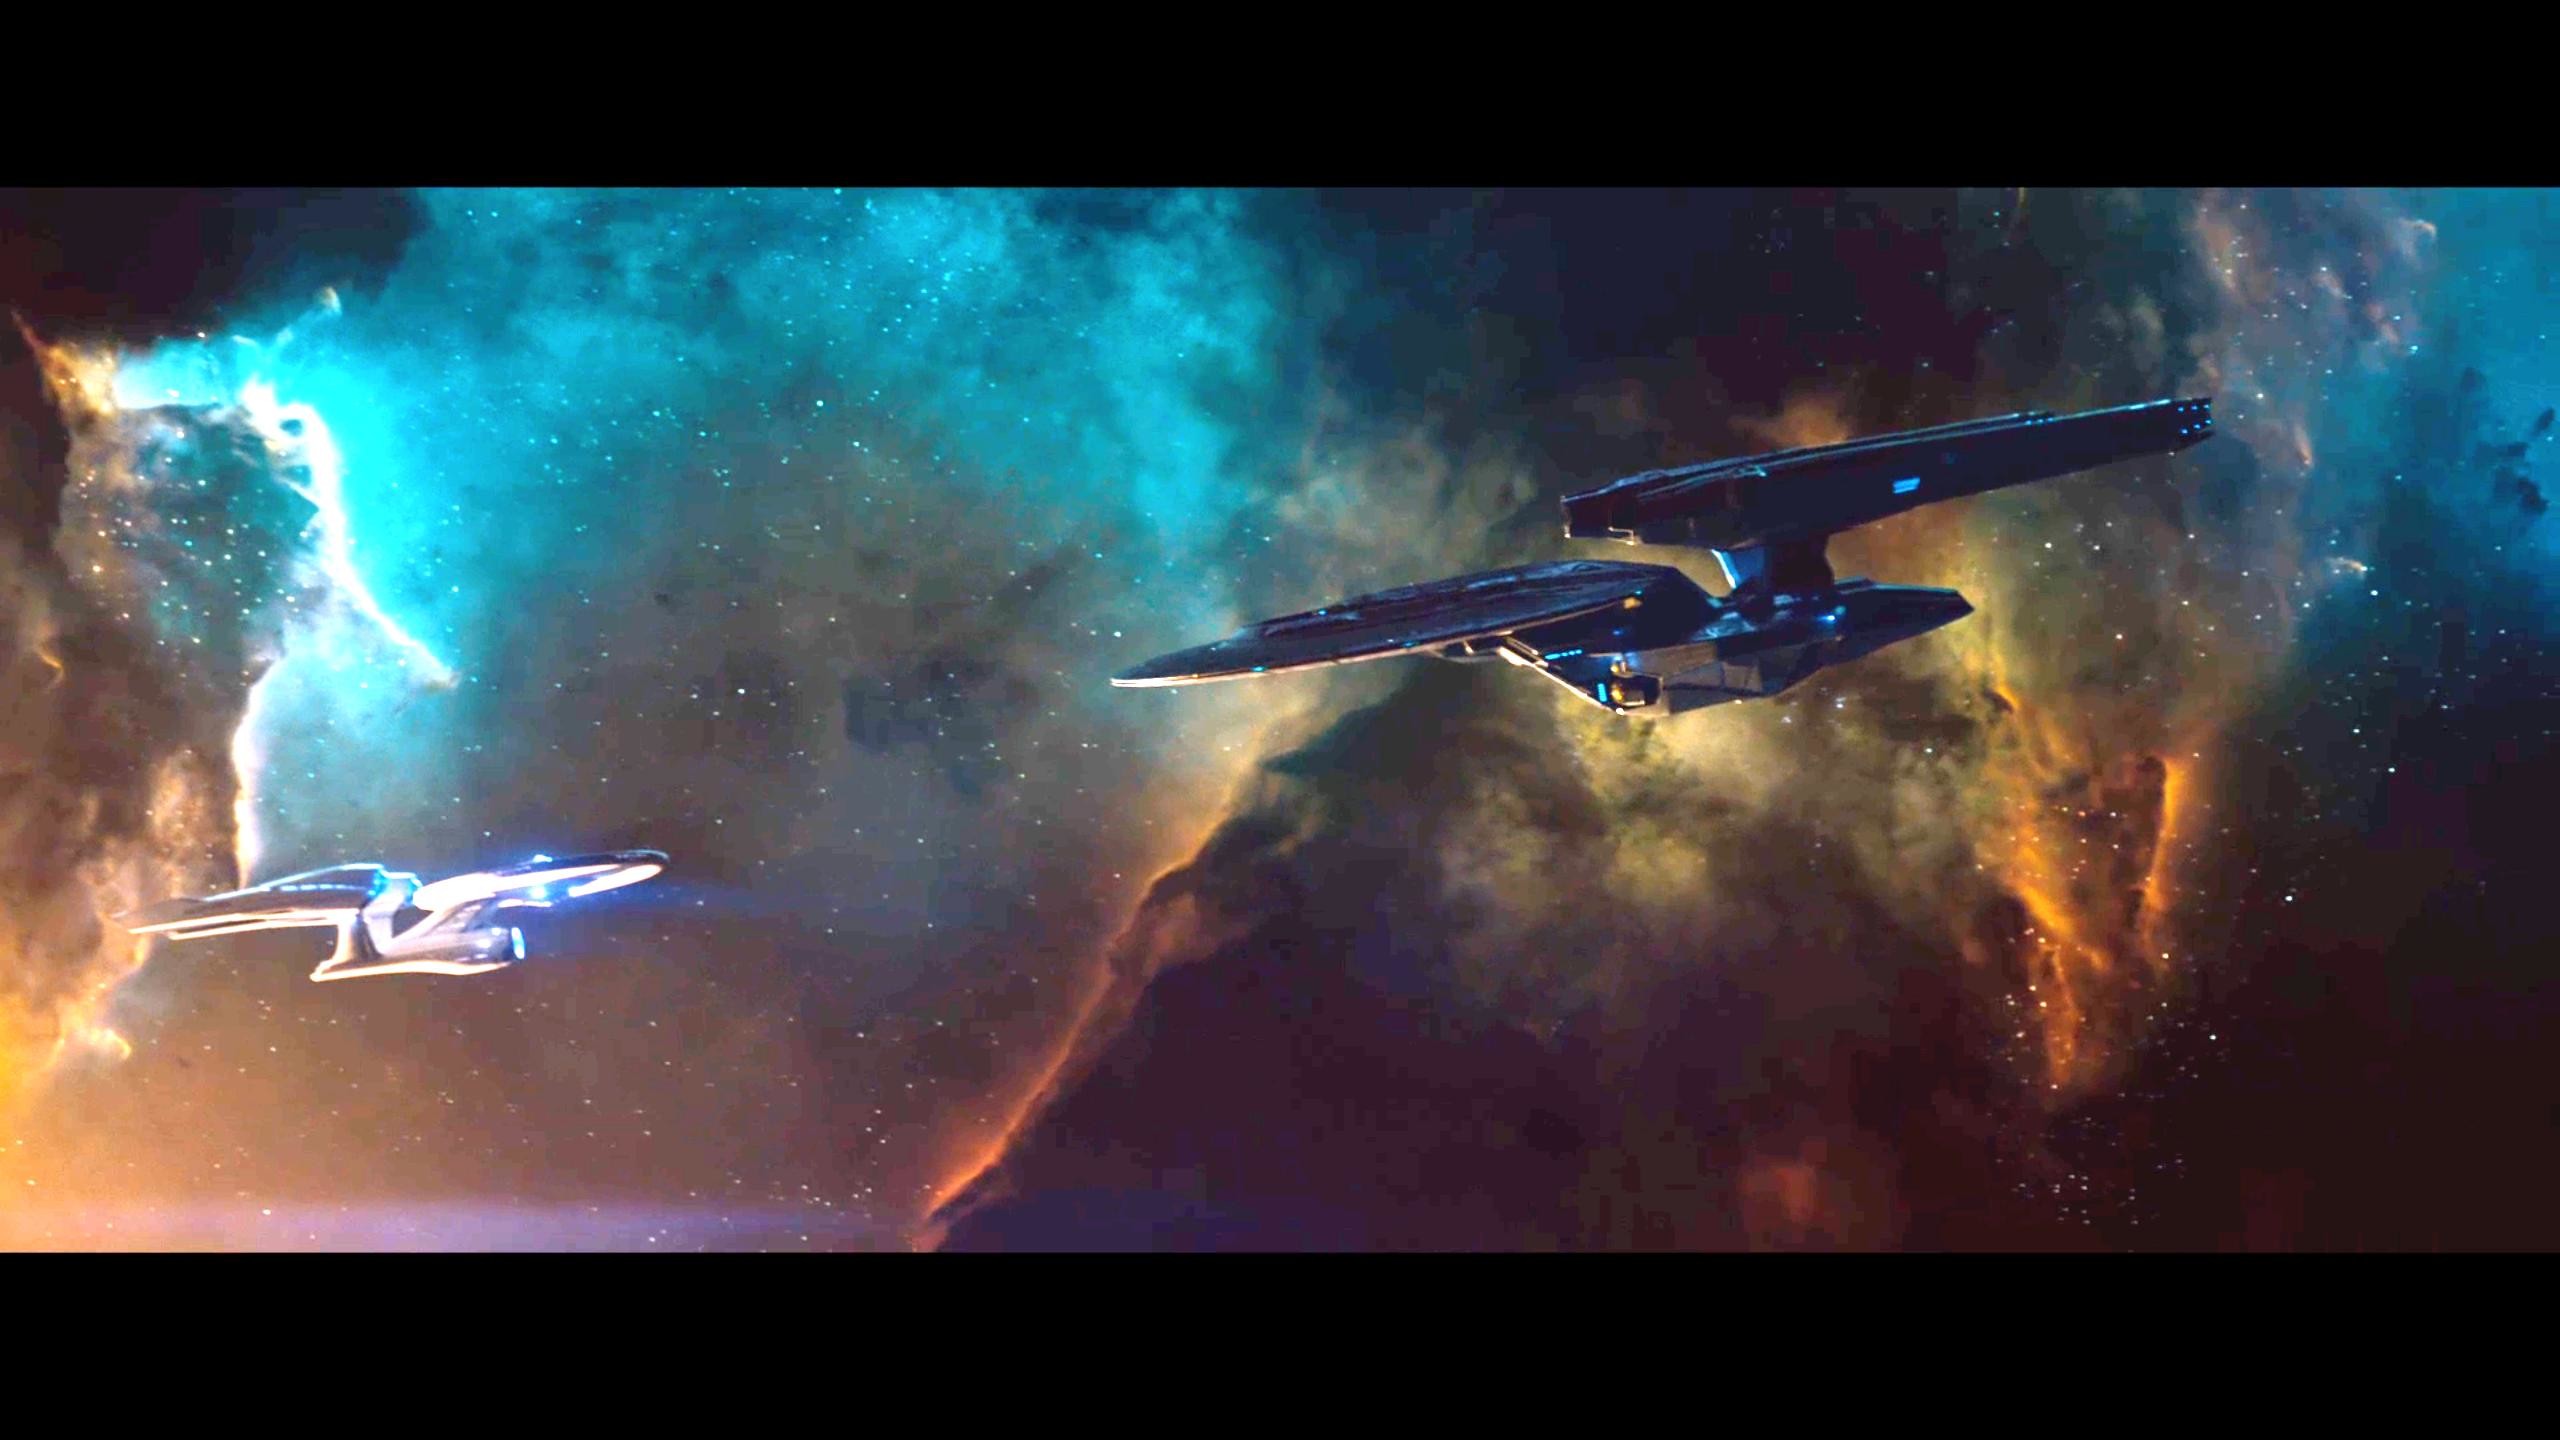 2560x1440 358 best Star Trek Starships images on Pinterest | Star trek ships,  Trekking and Spaceships